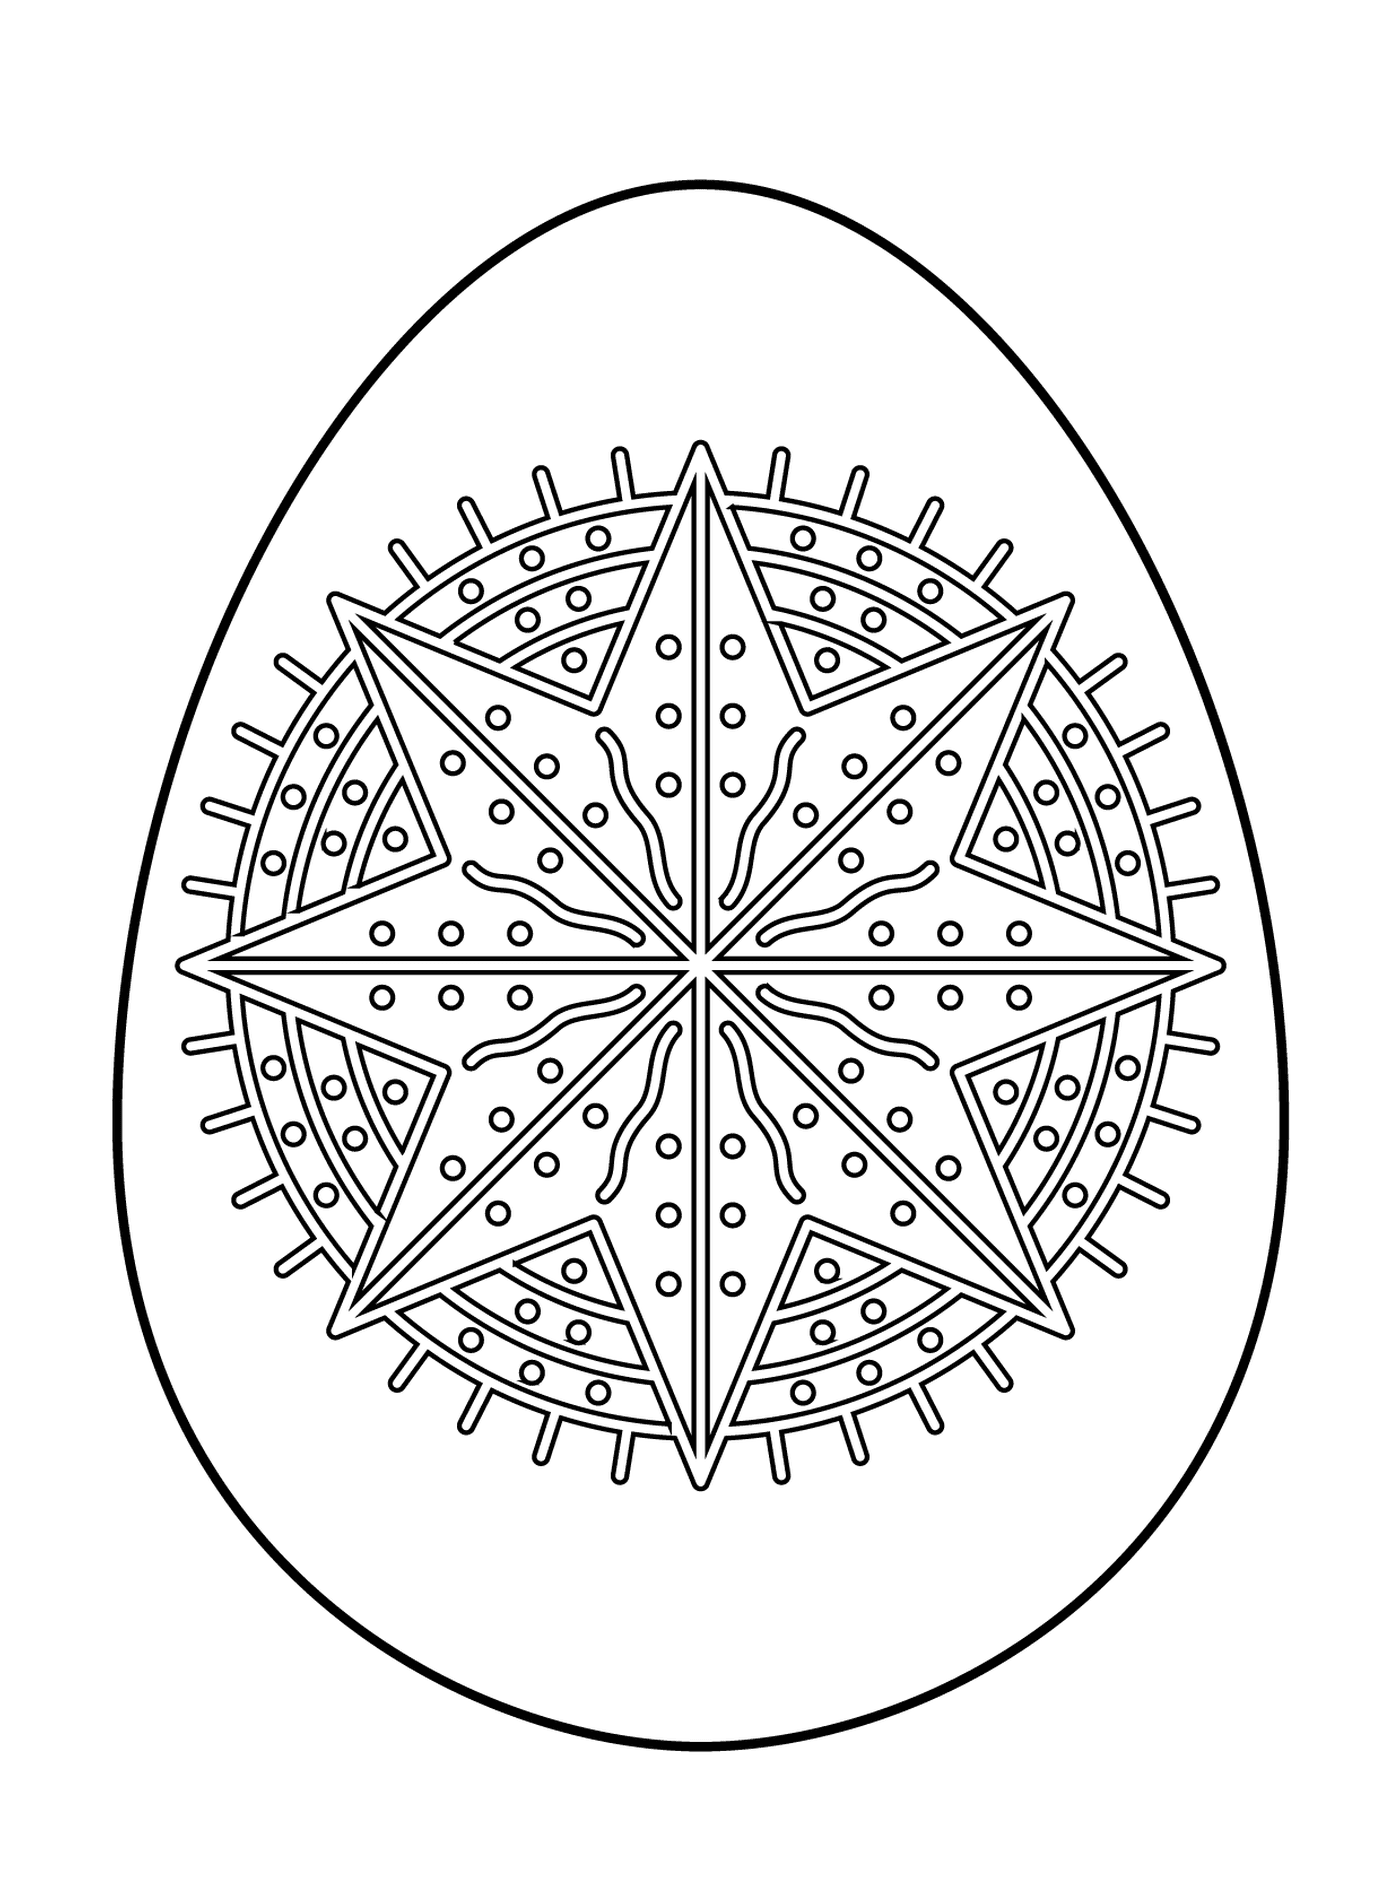  Huevo de Pascua con patrón estrella de octagrama 